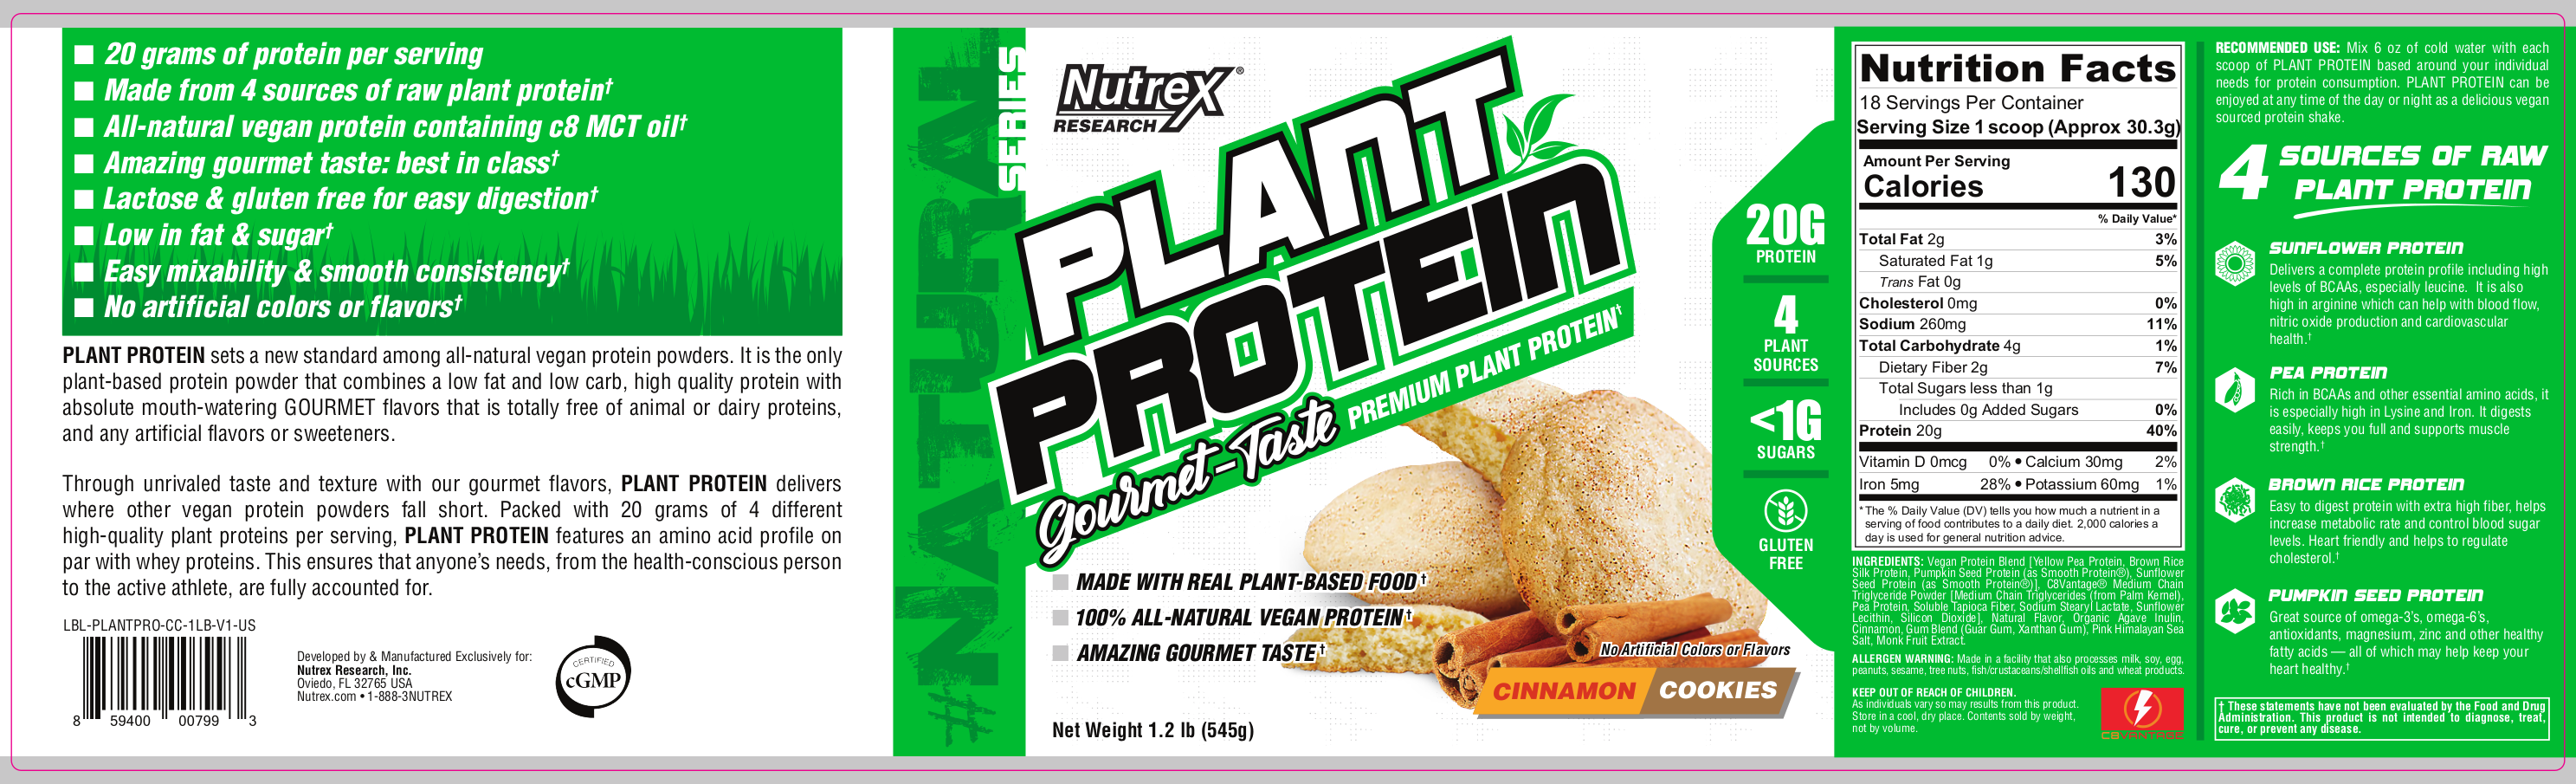 Nutrex Plant Protein Label